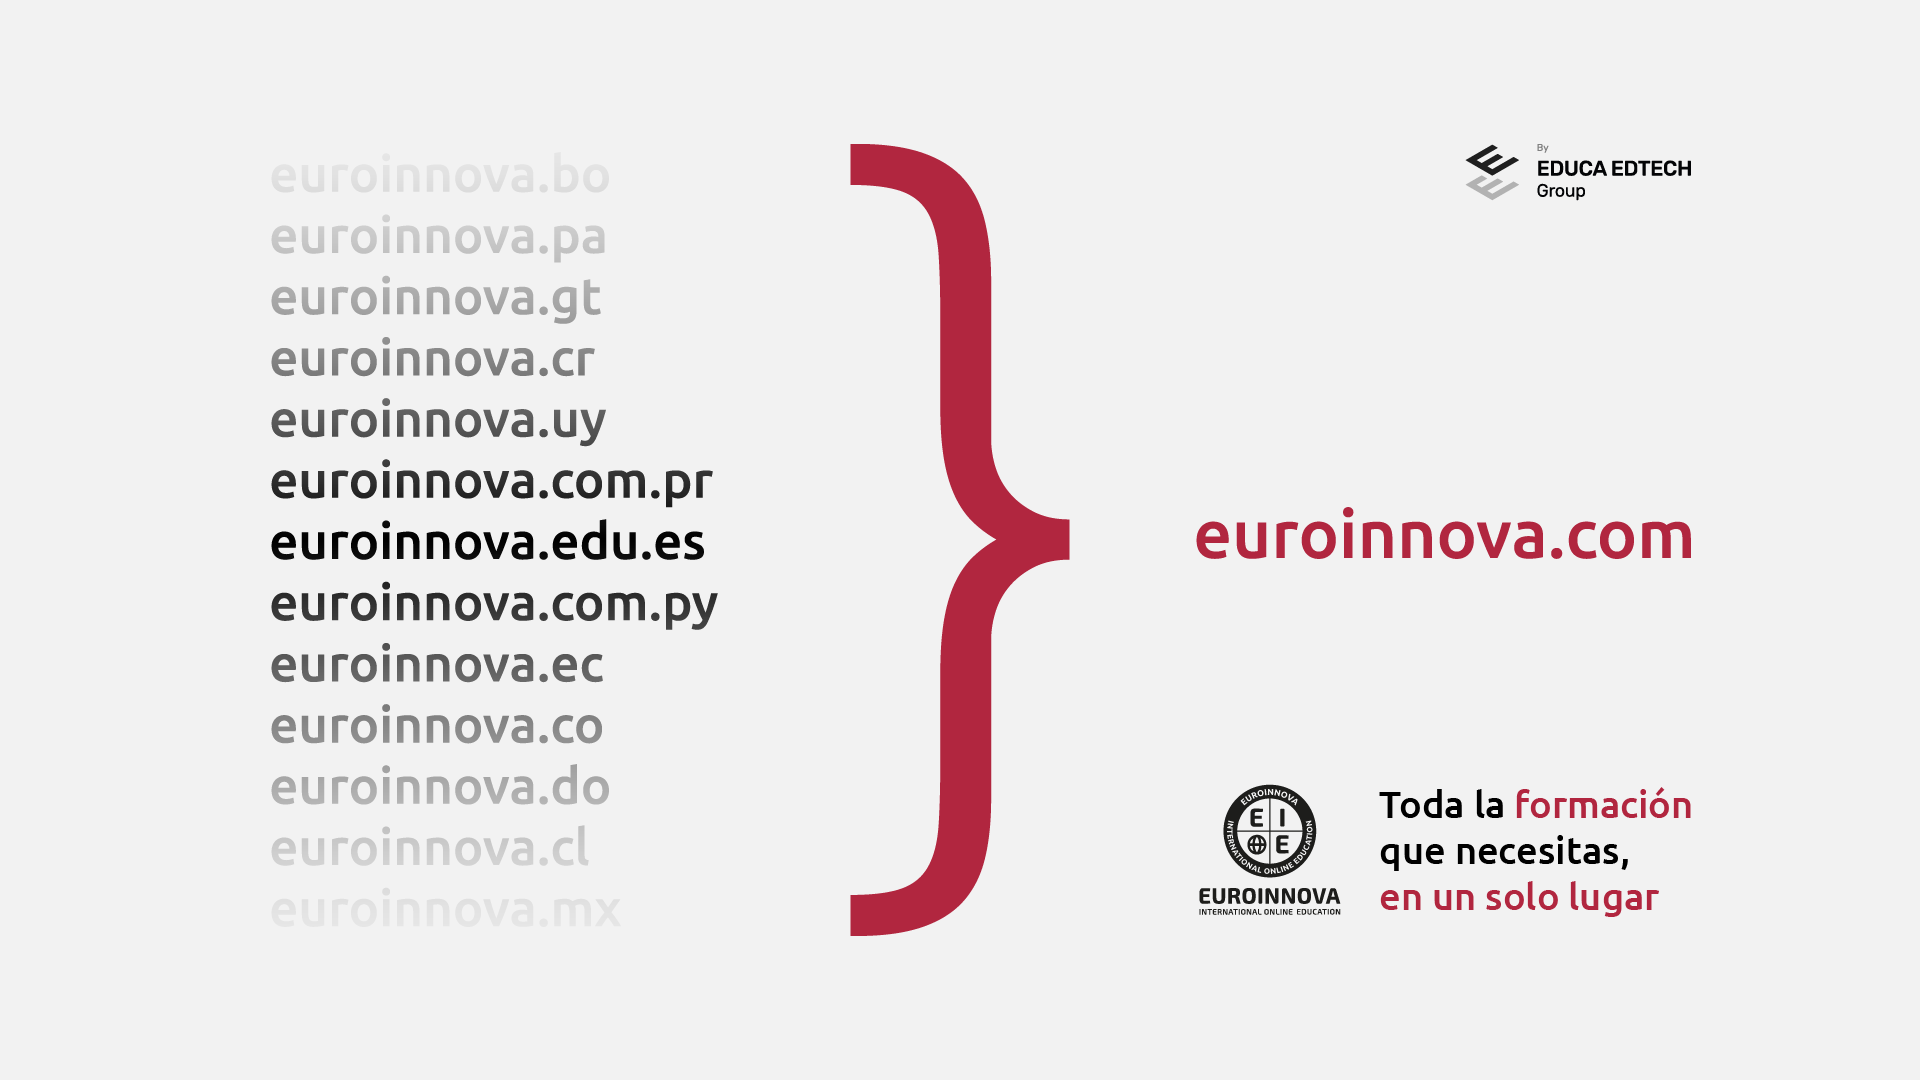 Euroinnova consolida su expansión global con la migración de todos sus dominios a un único sitio web